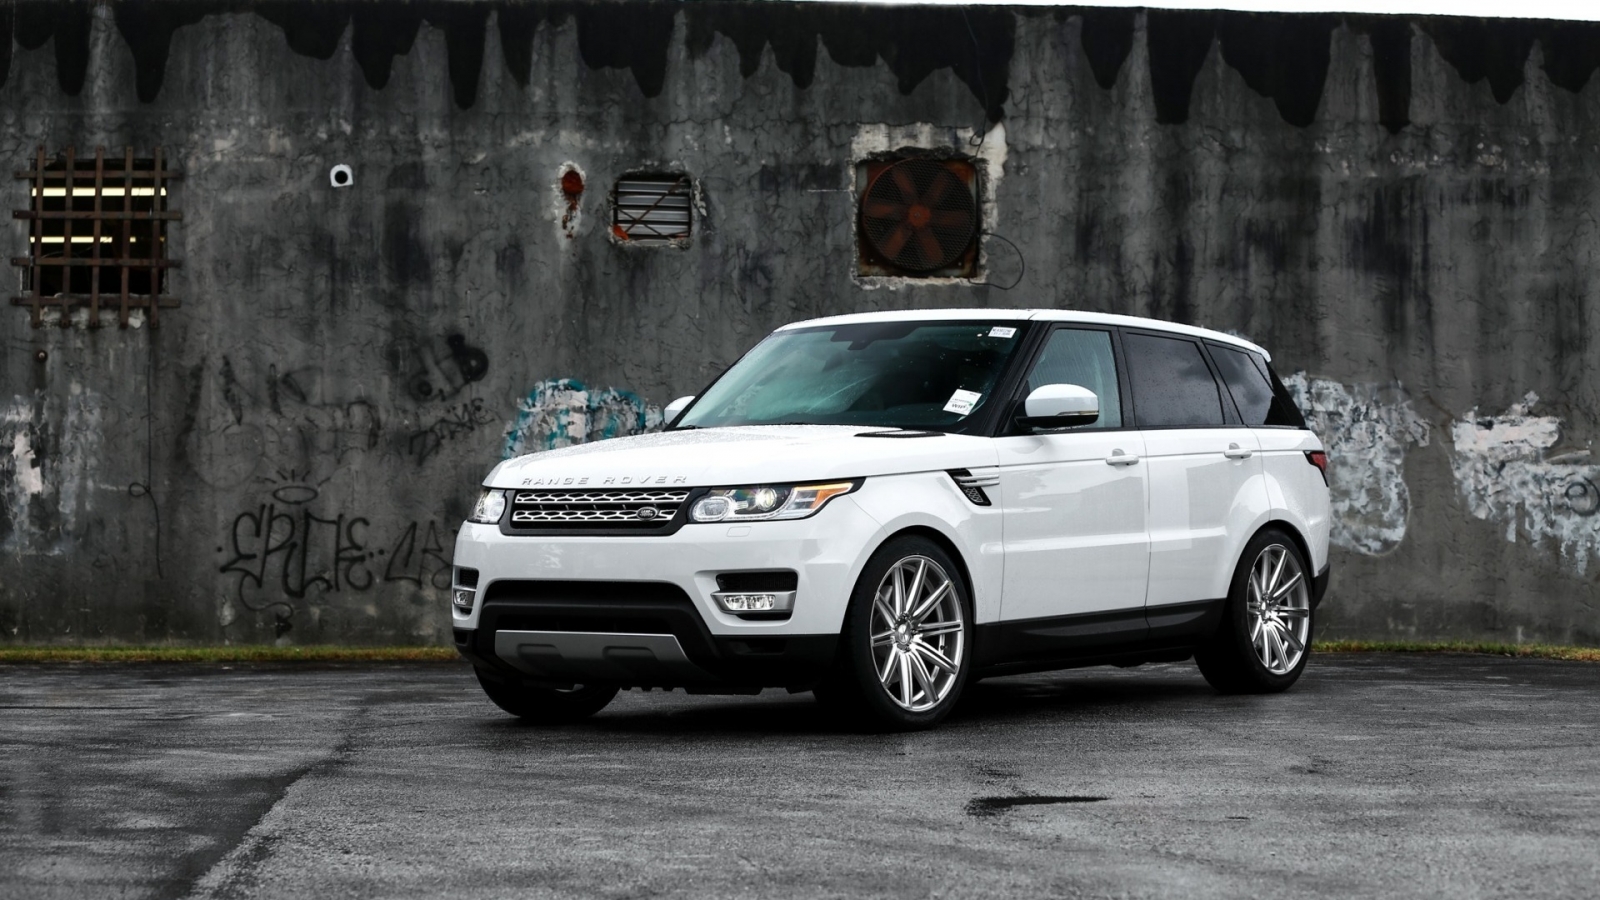 Gorgeous White Range Rover Sport for 1600 x 900 HDTV resolution